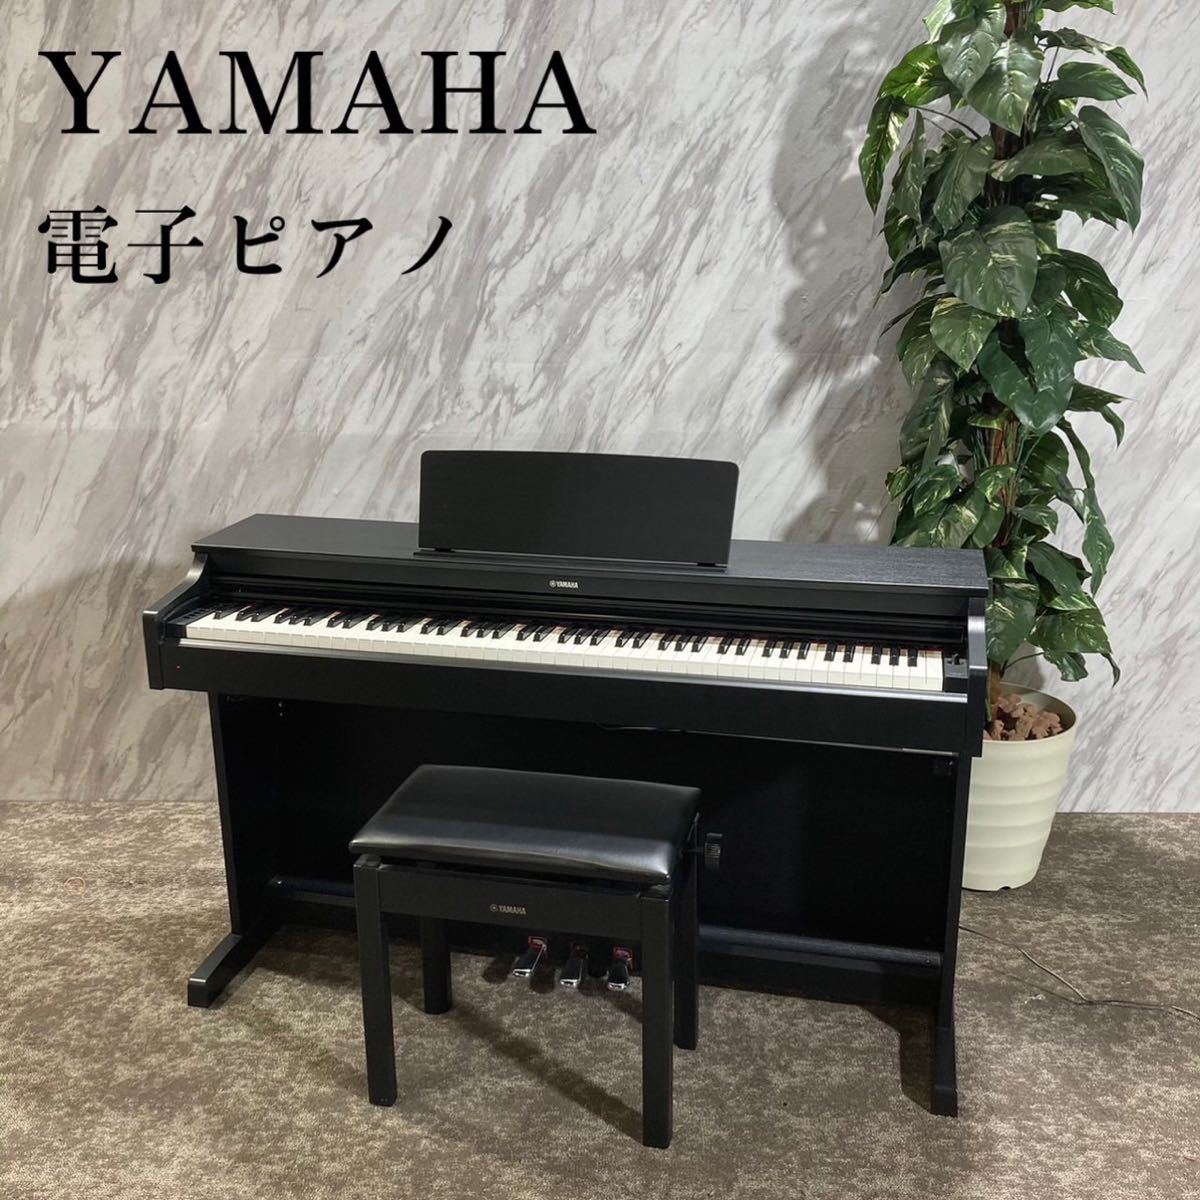 YAMAHA ヤマハ 電子ピアノ YDP-163B ARIUS 楽器 F358 | inmano.com.br